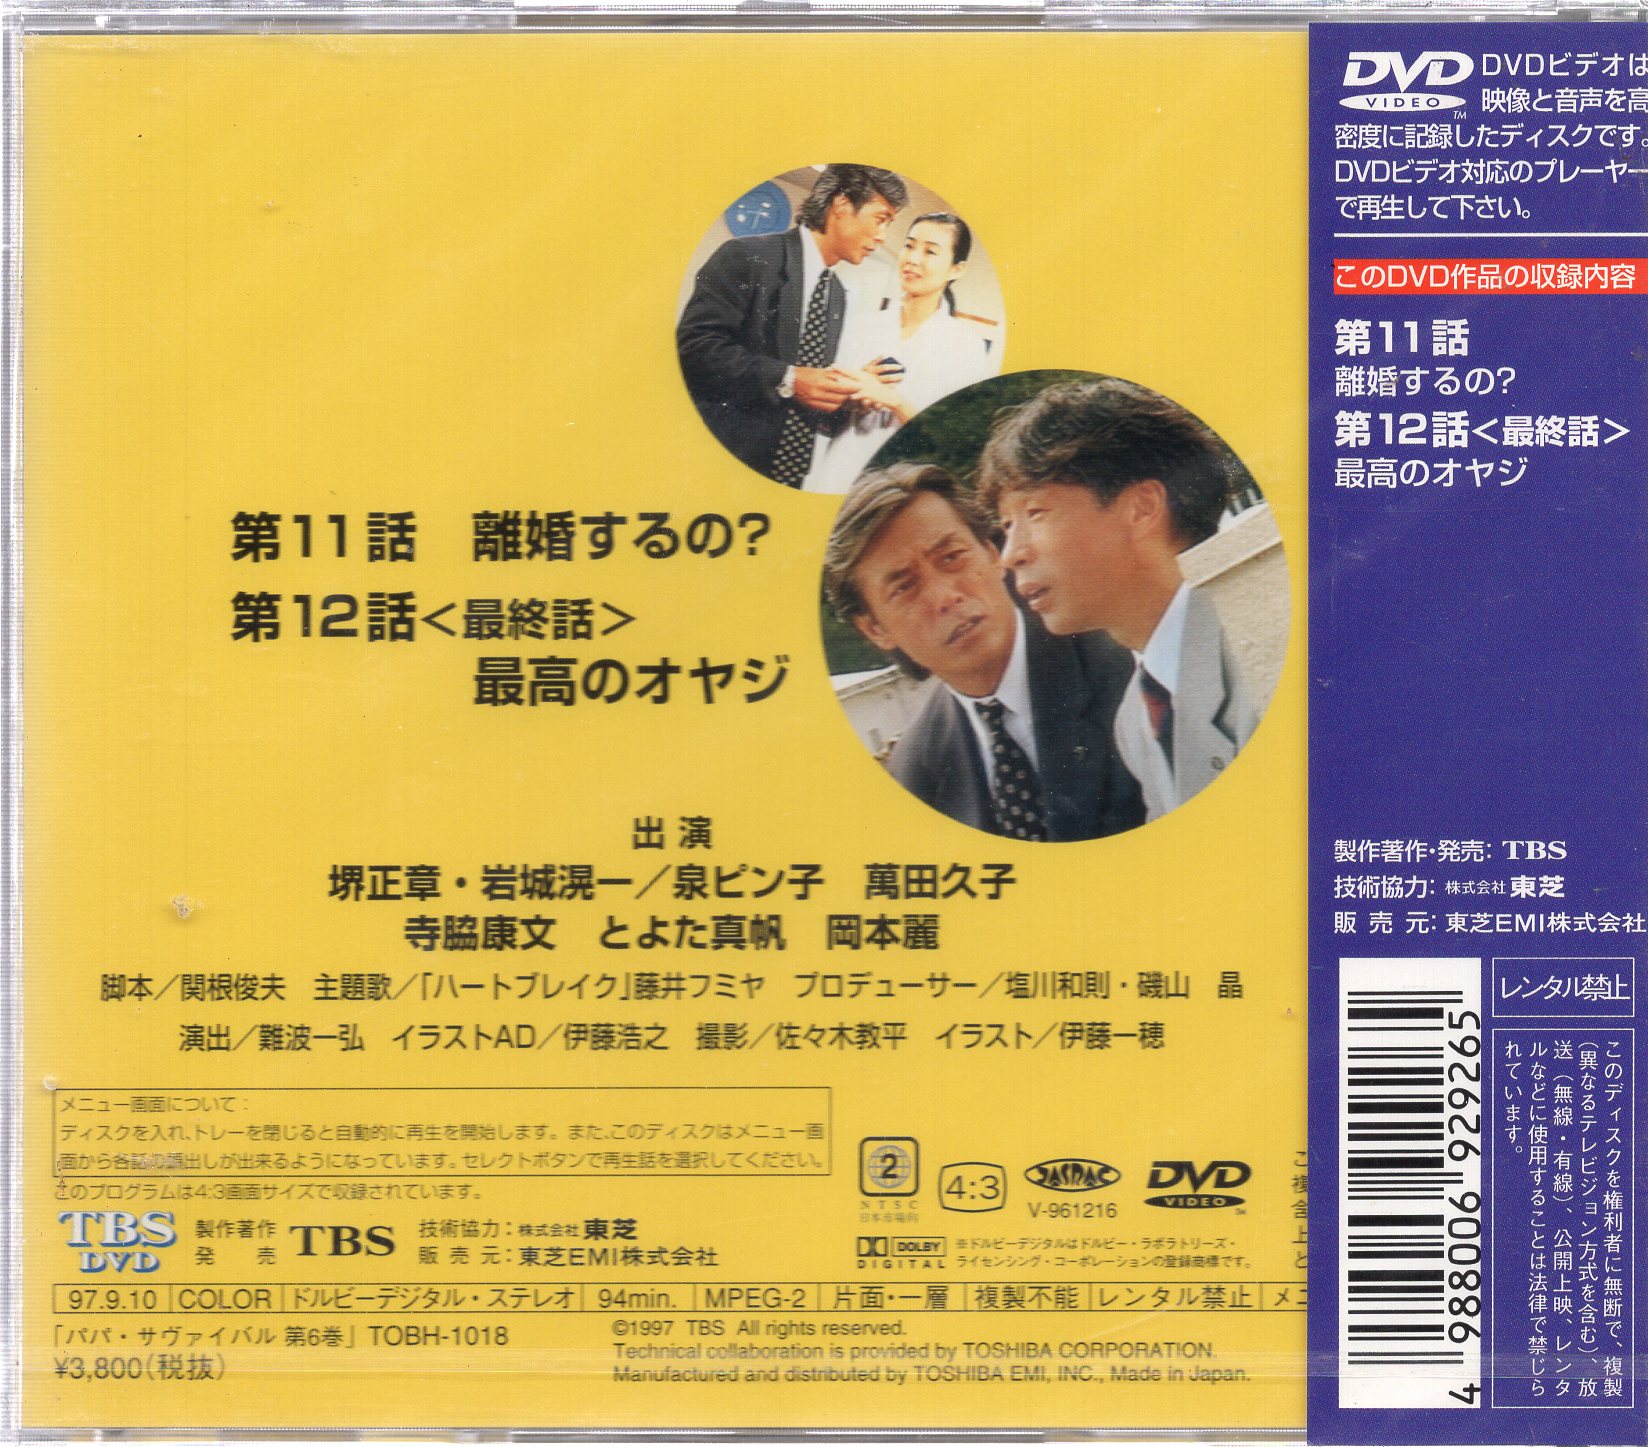 セル版DVD【パパサヴァイバル】野村佑香11歳 江口尚希20歳 入江純25歳 